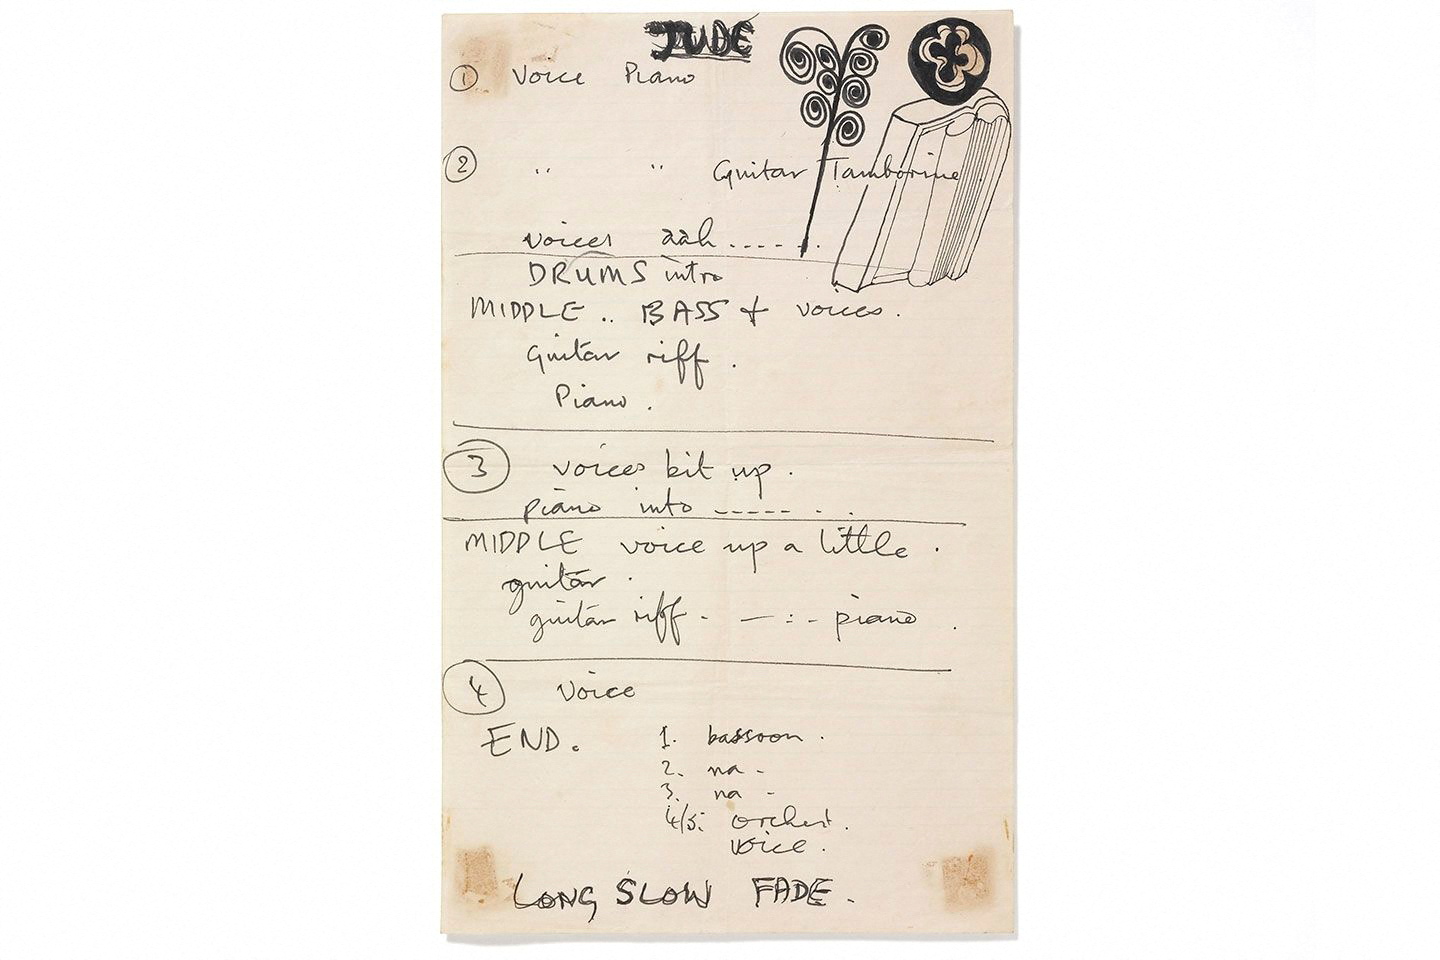 Los apuntes manuscritos de Paul McCartney sobre la canción. Fuera puestos a subasta a principios de este año.